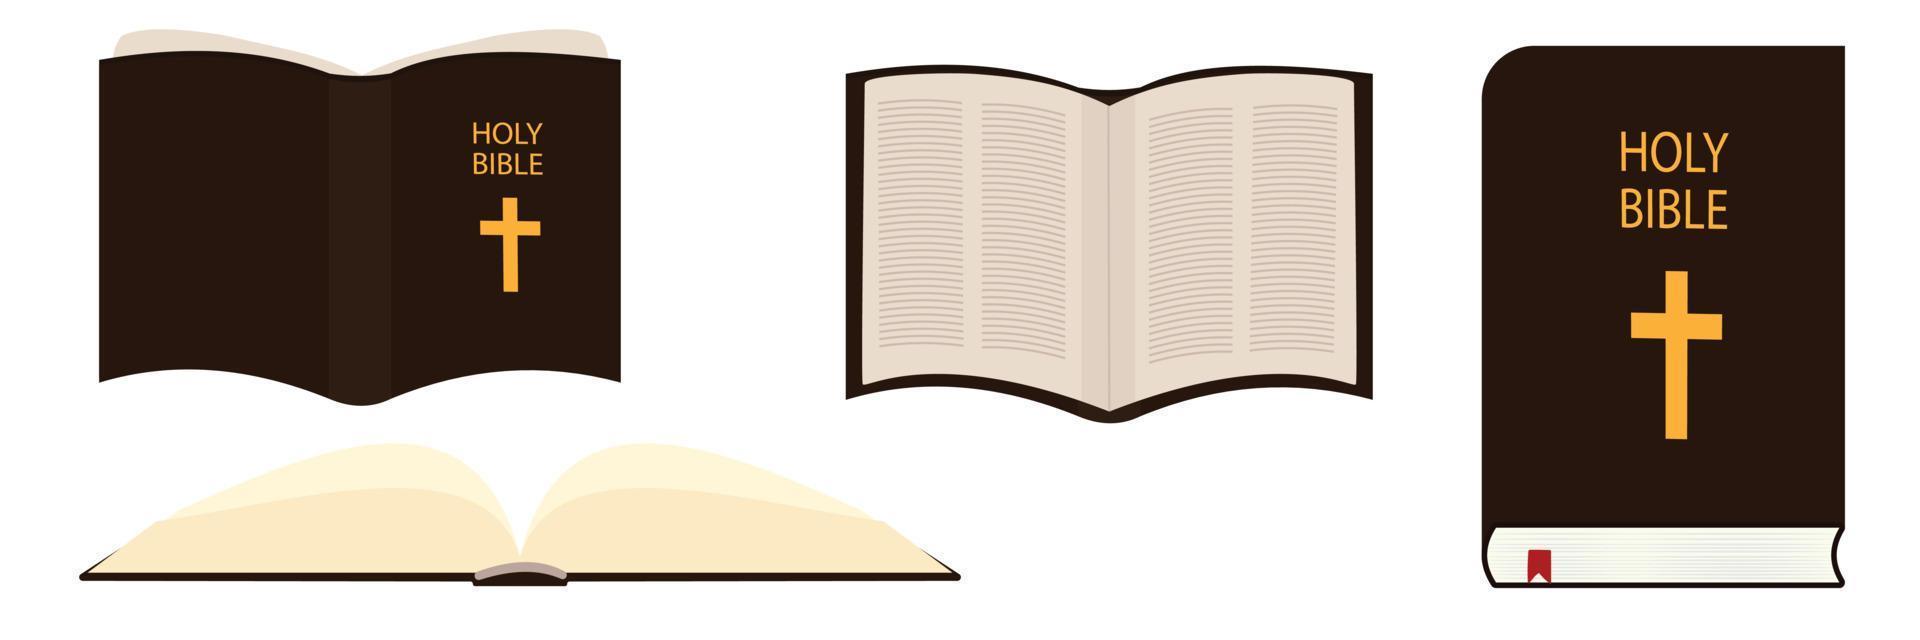 conjunto de santa biblia. libro abierto, libro cerrado, ilustración vectorial. vector